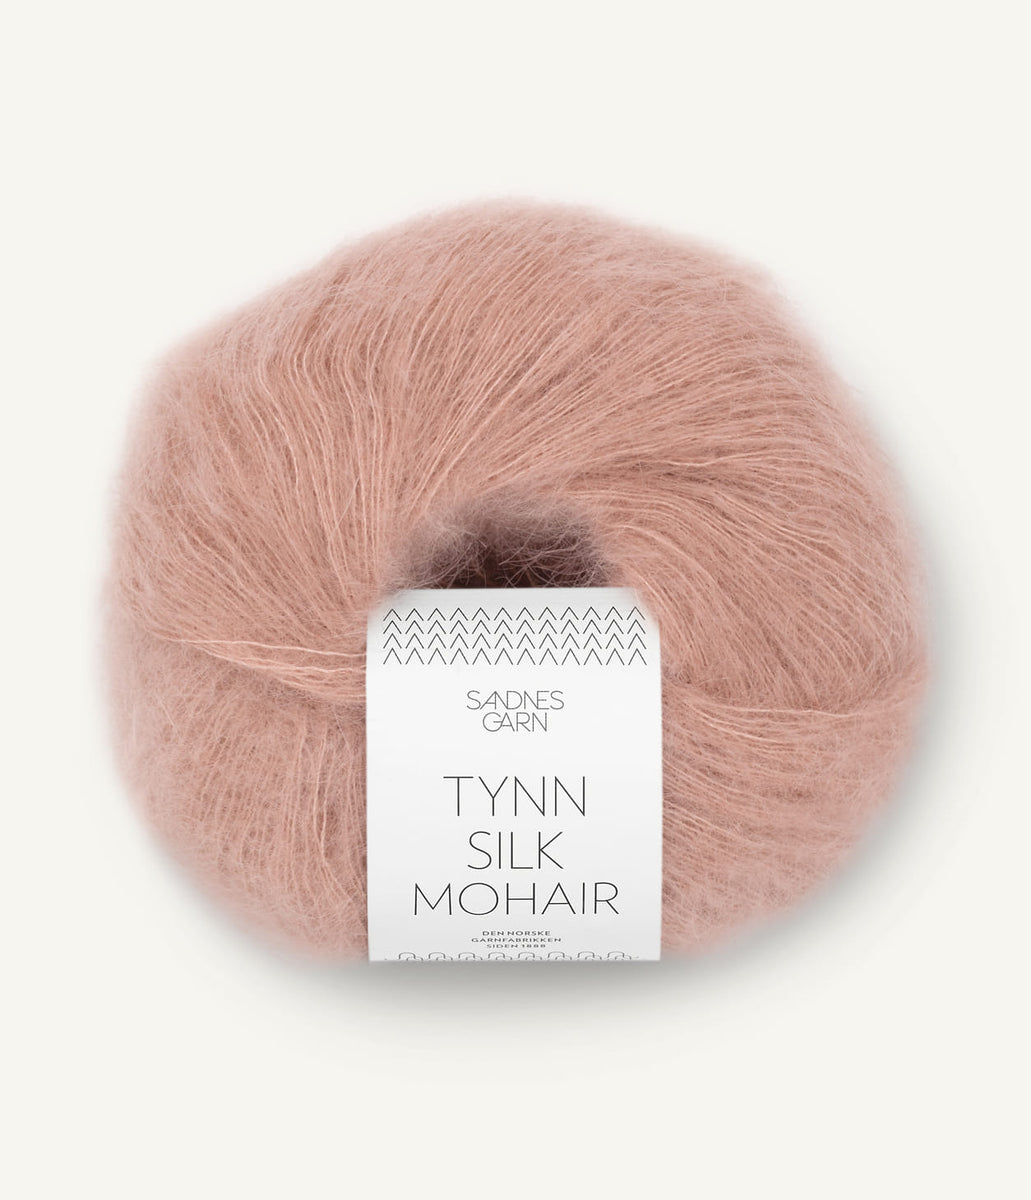 Silk Mohair – of A La Mode